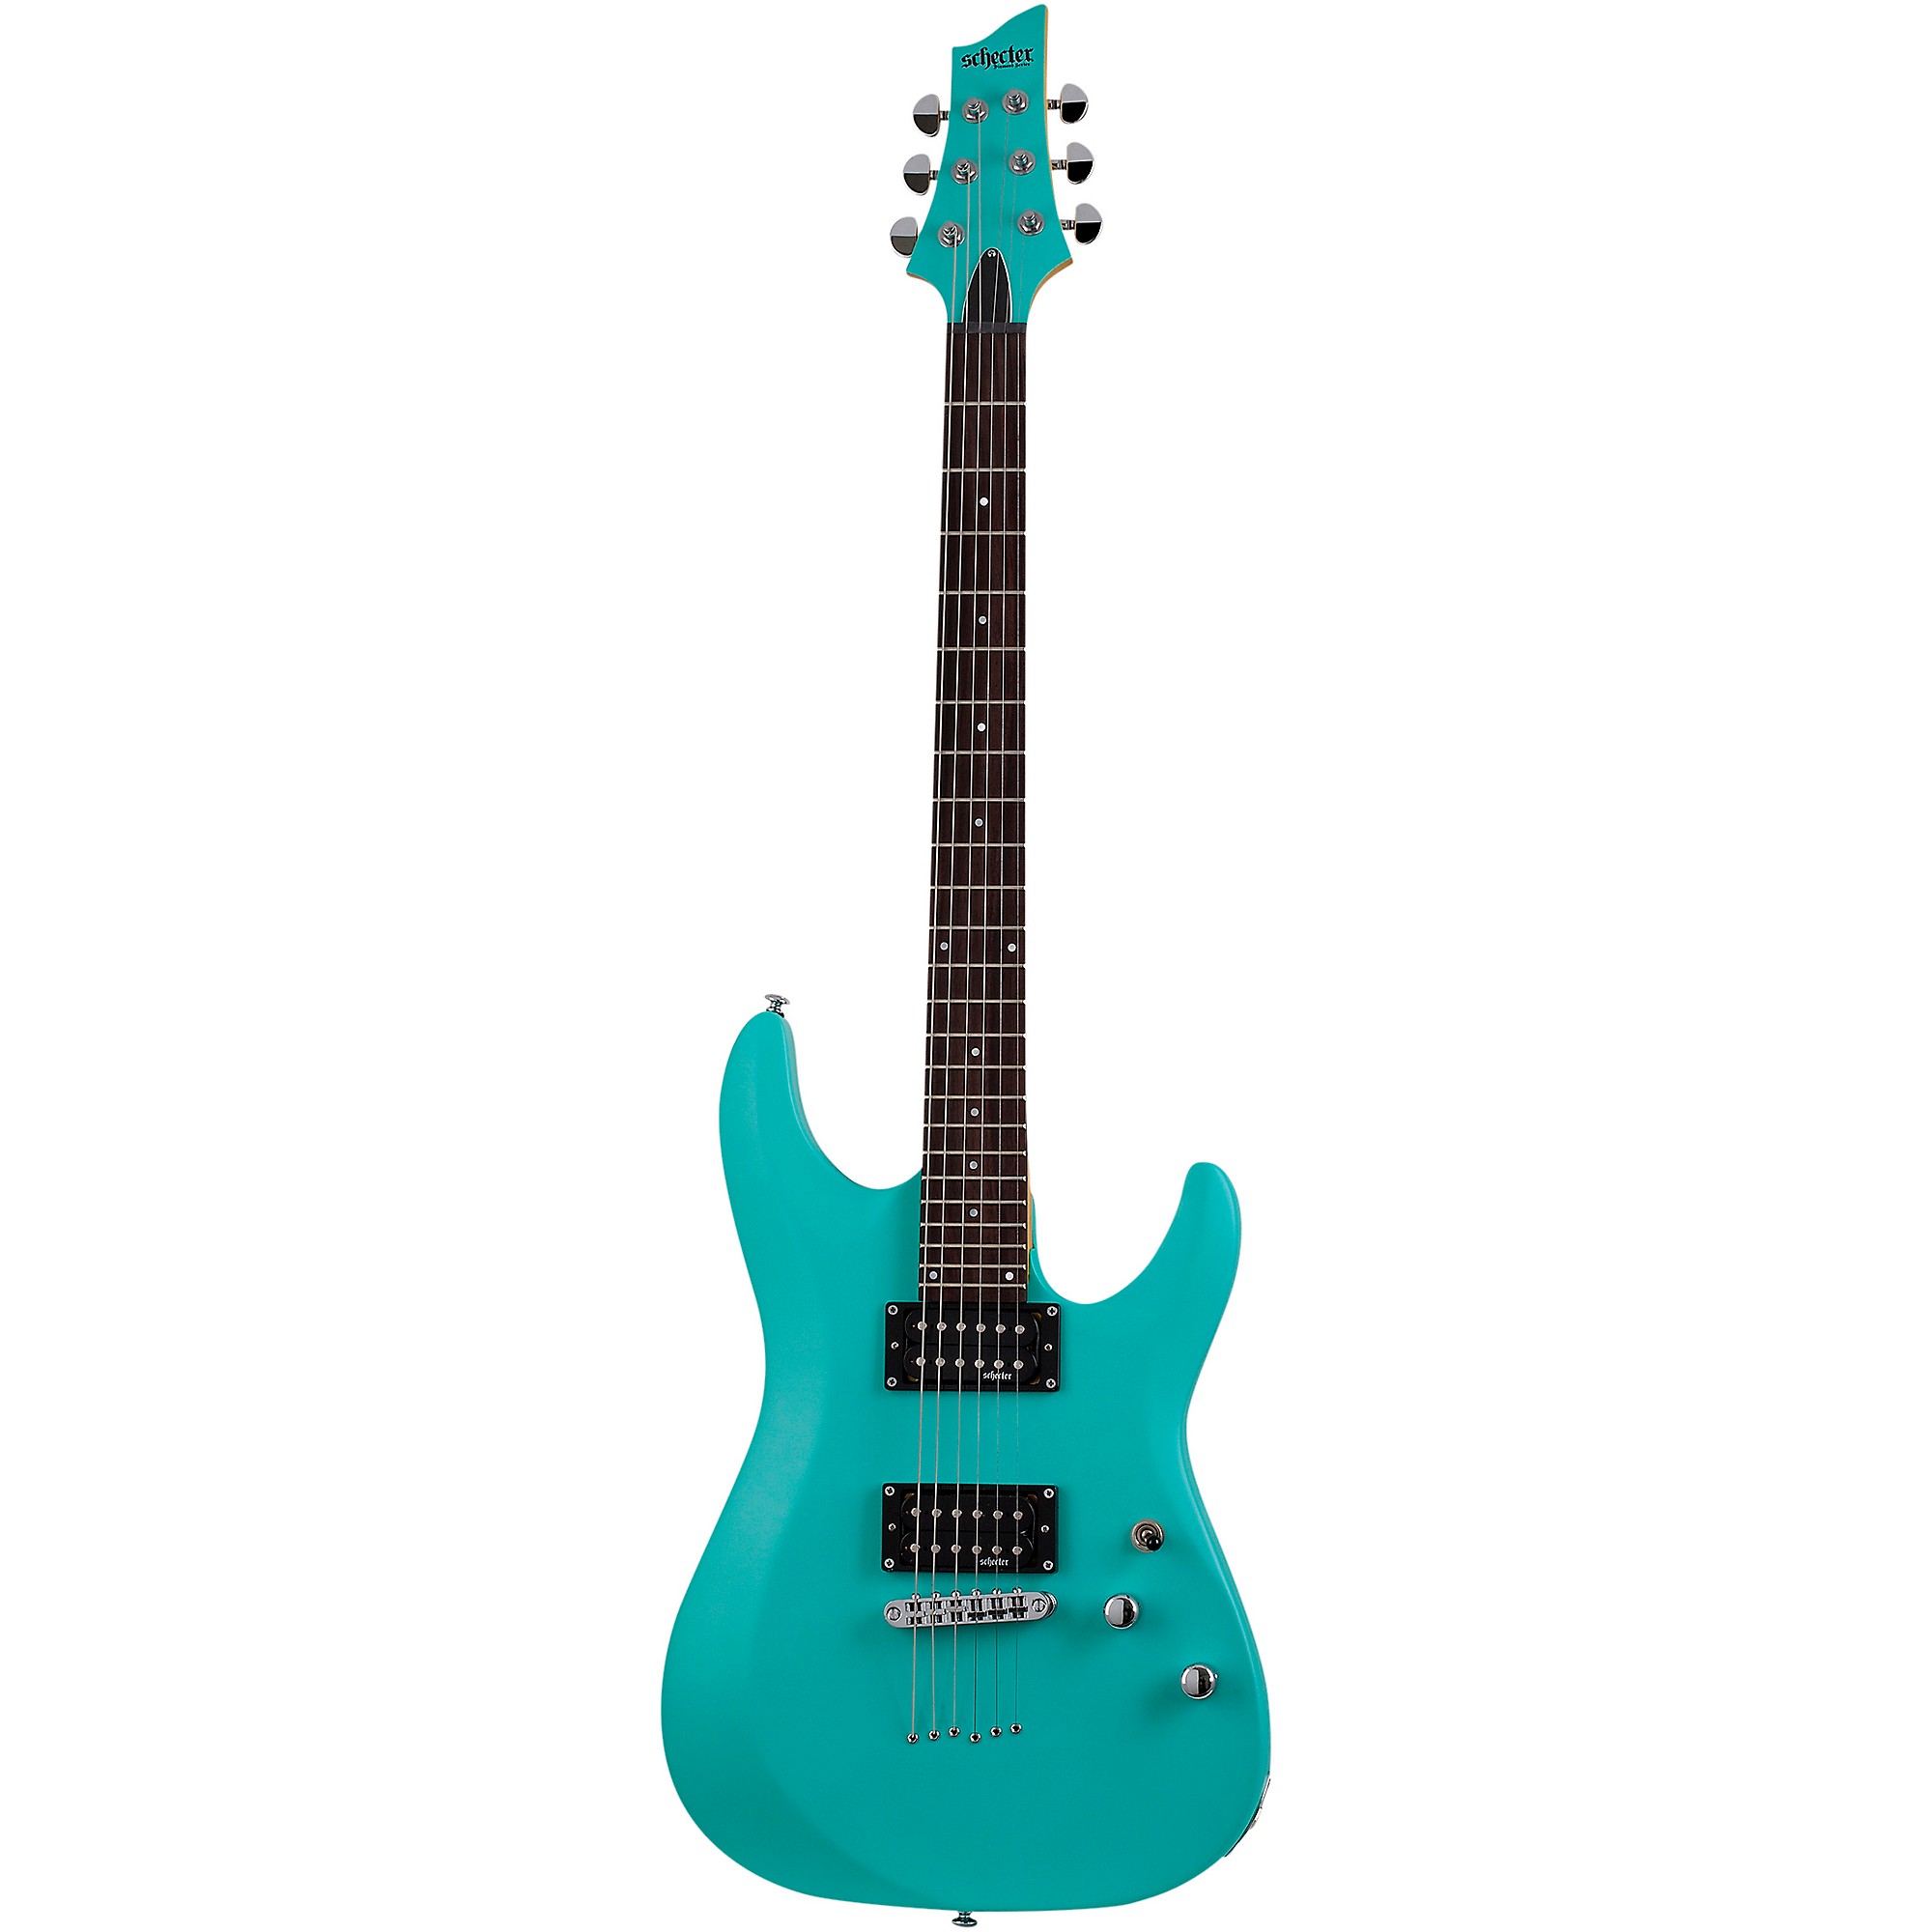 Электрогитара Schecter Guitar Research C-6 Deluxe Aqua цена и фото